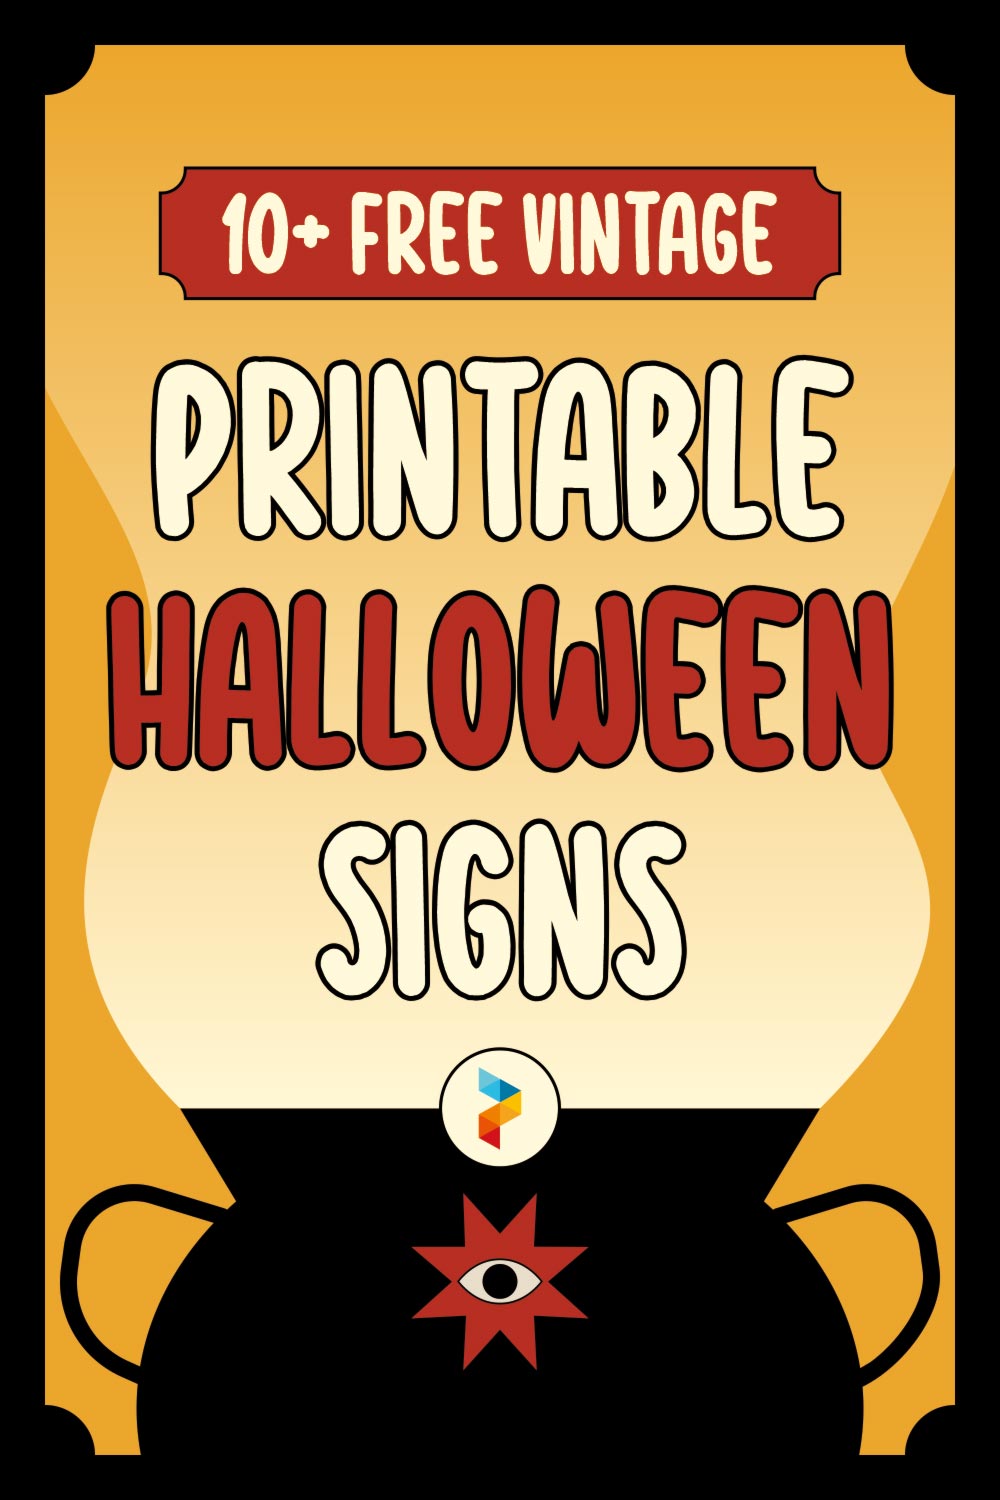 Vintage Printable Halloween Signs